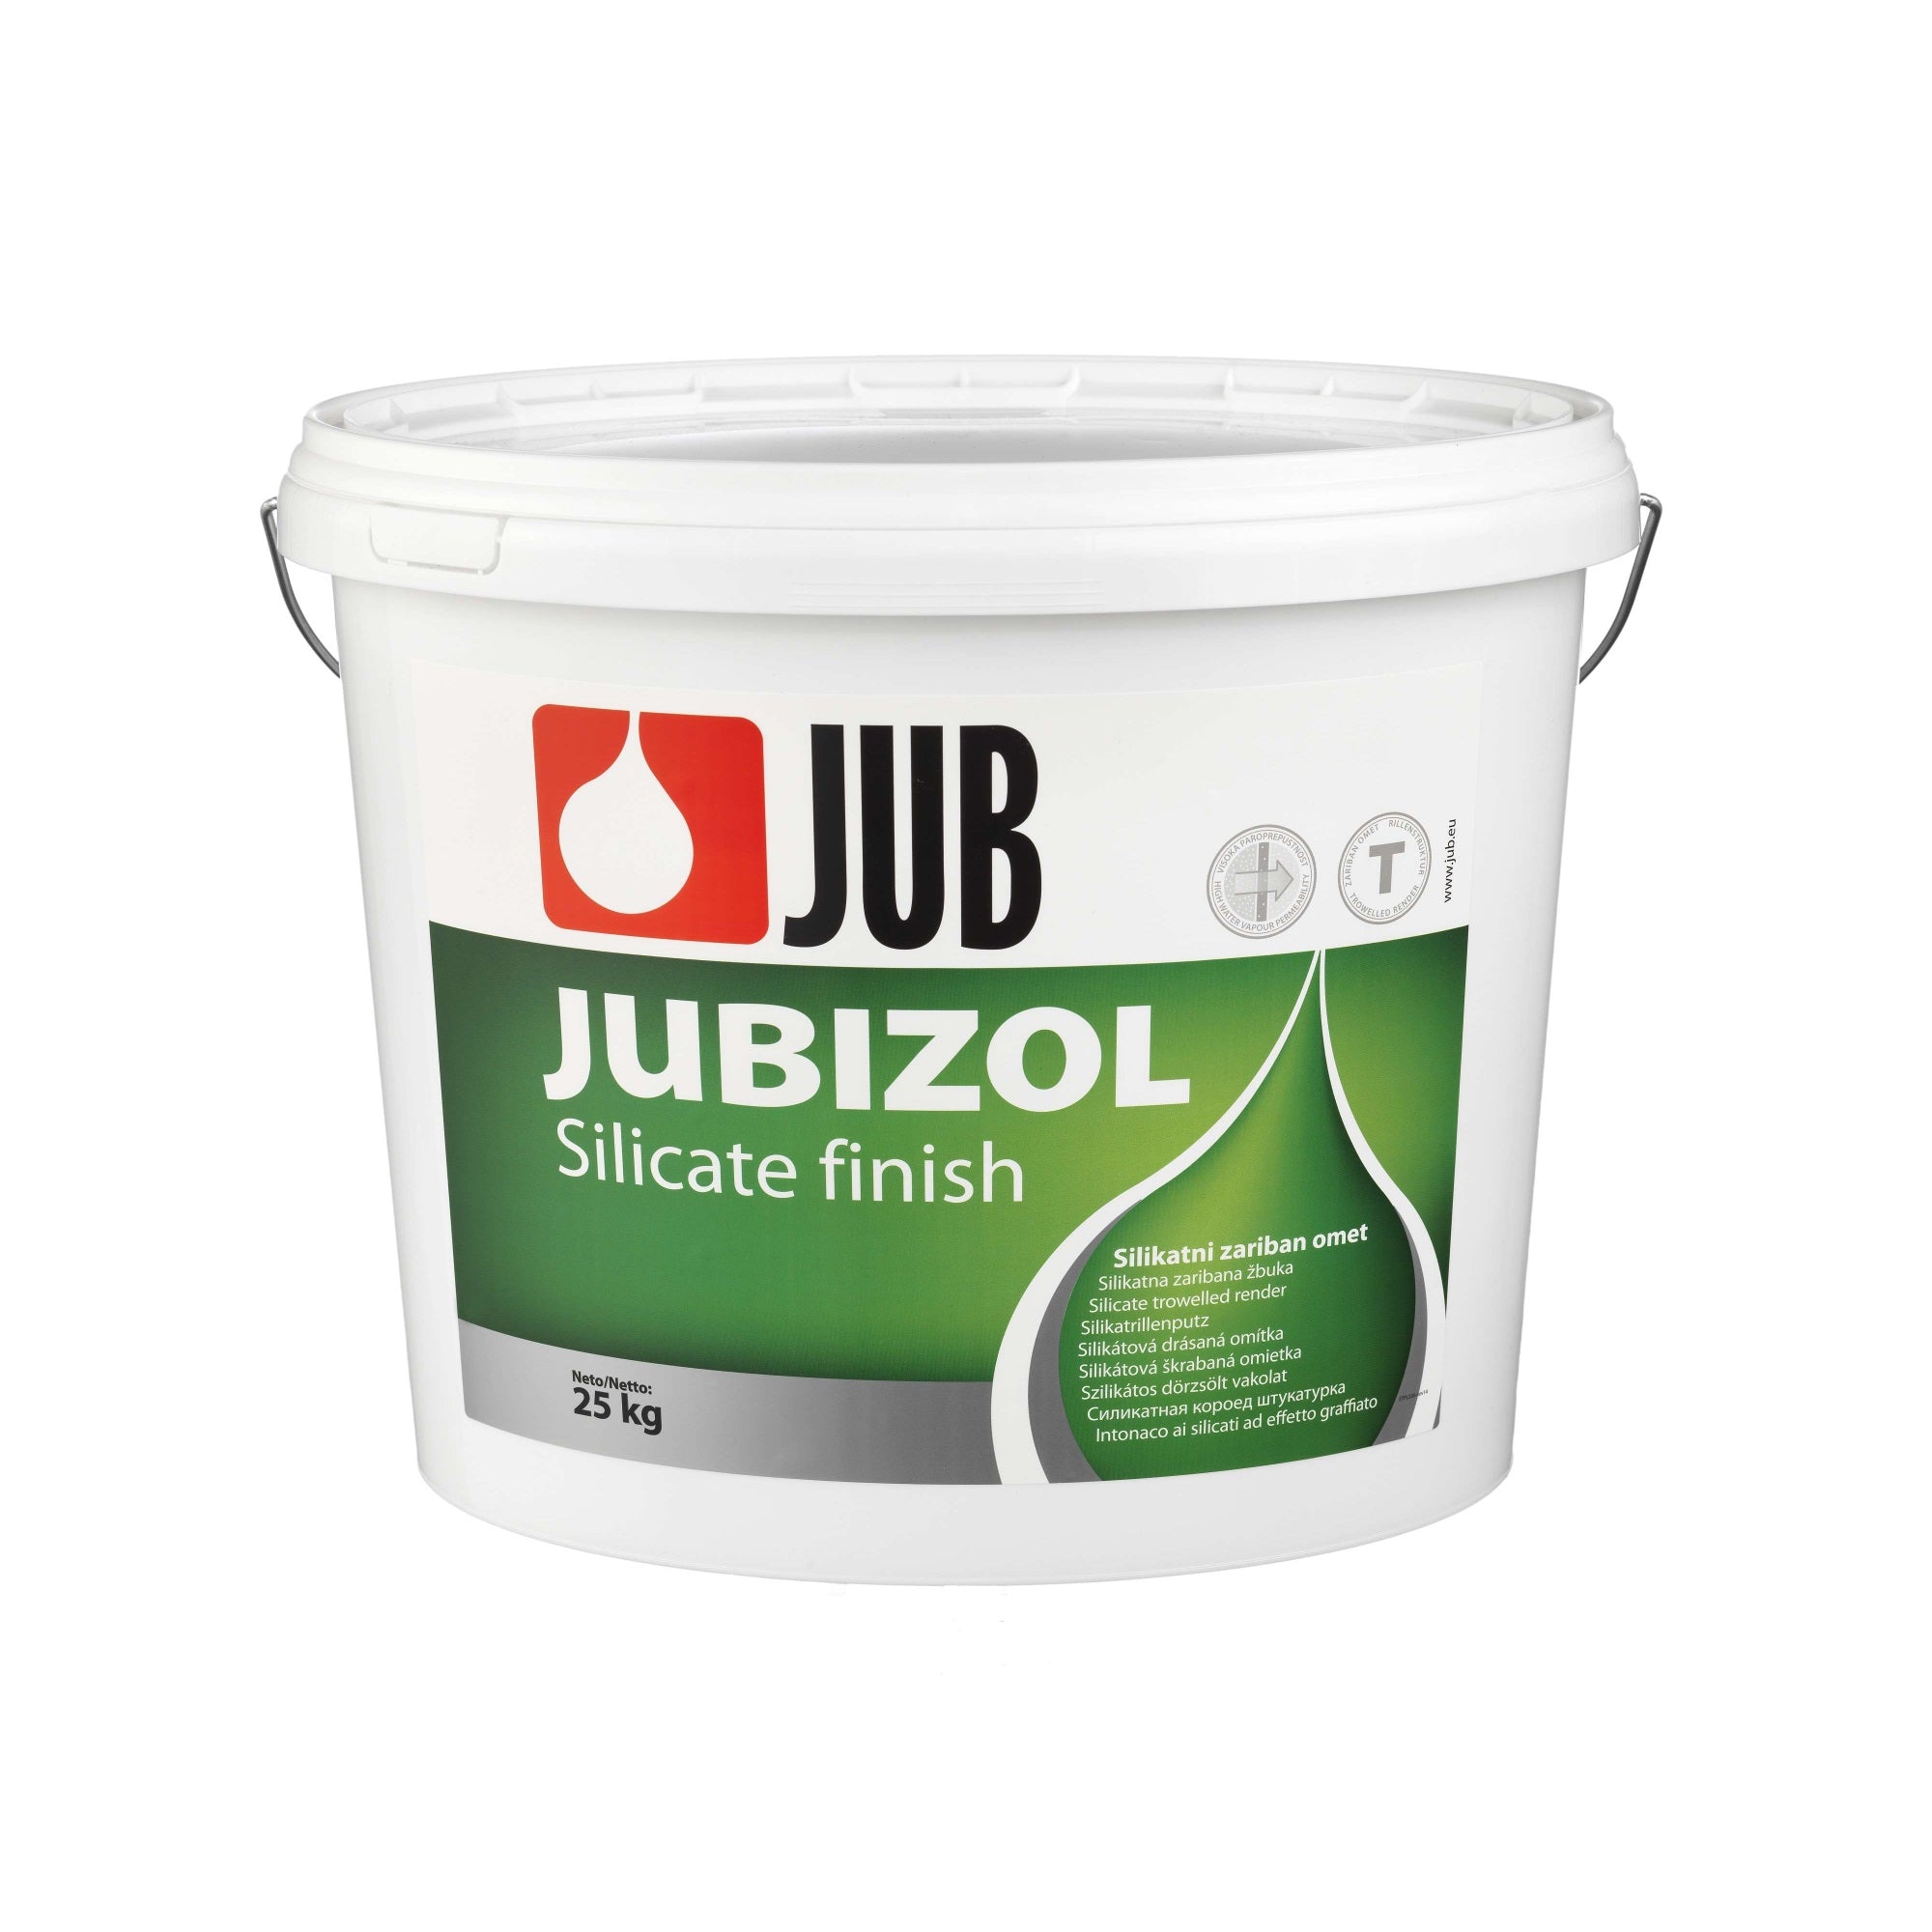 JUB JUBIZOL Silicate finish T silikátová škrabaná omietka 25 kg